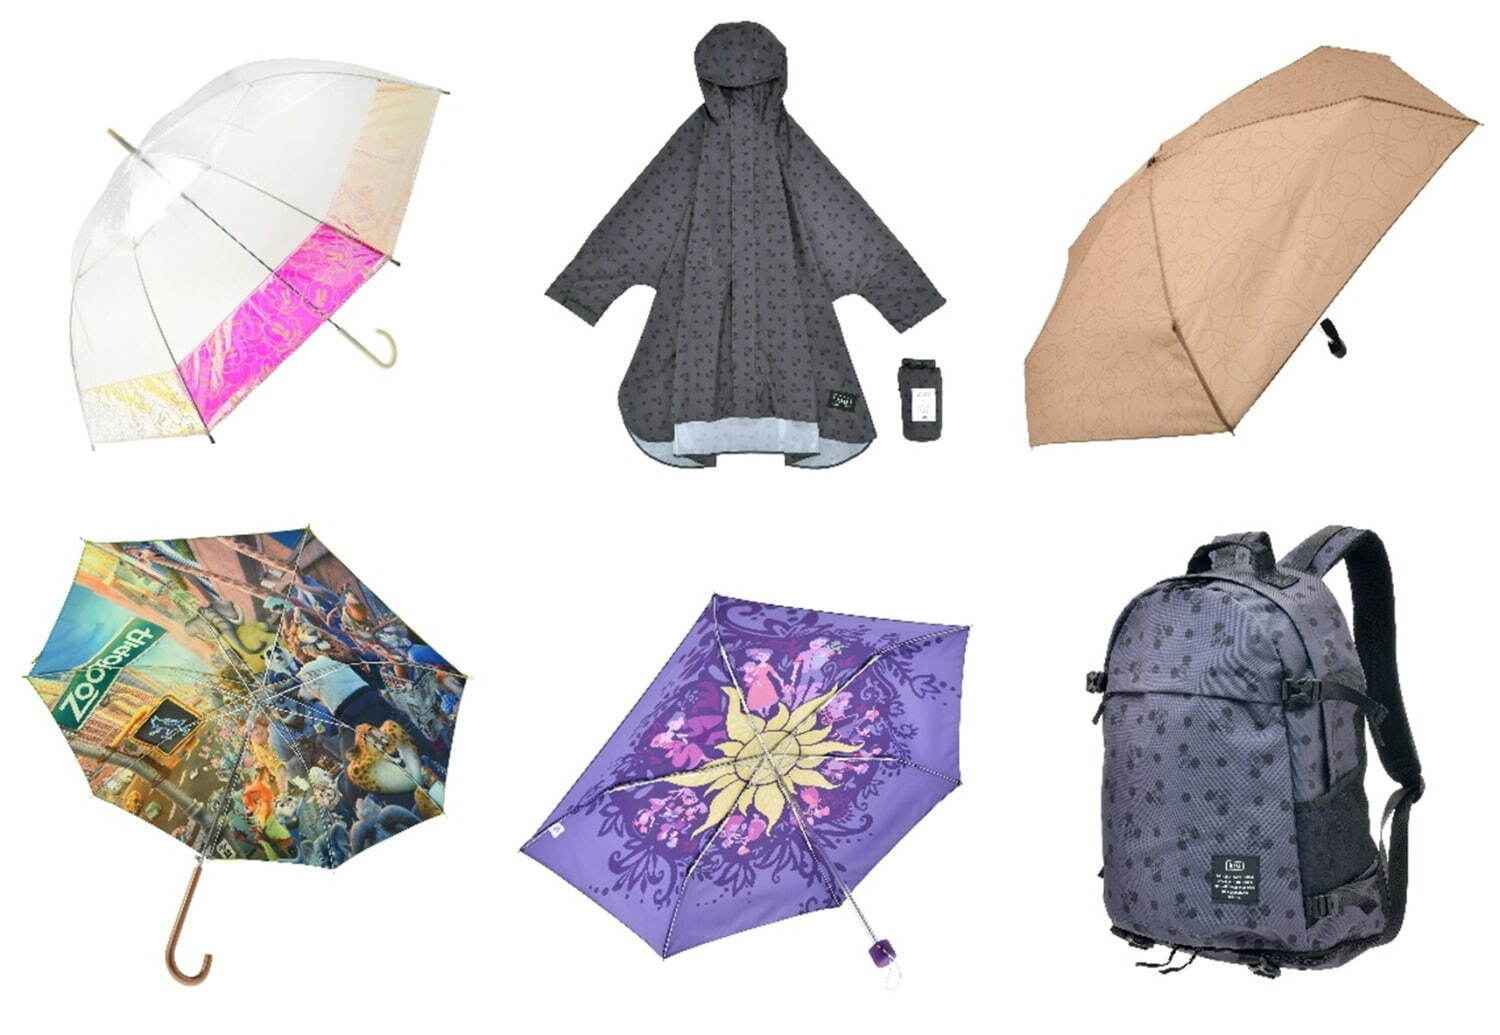 ディズニーストアとWpc.の“オーロラ色に輝く”ミッキー長傘、『ズートピア』の長傘も ファッションプレス